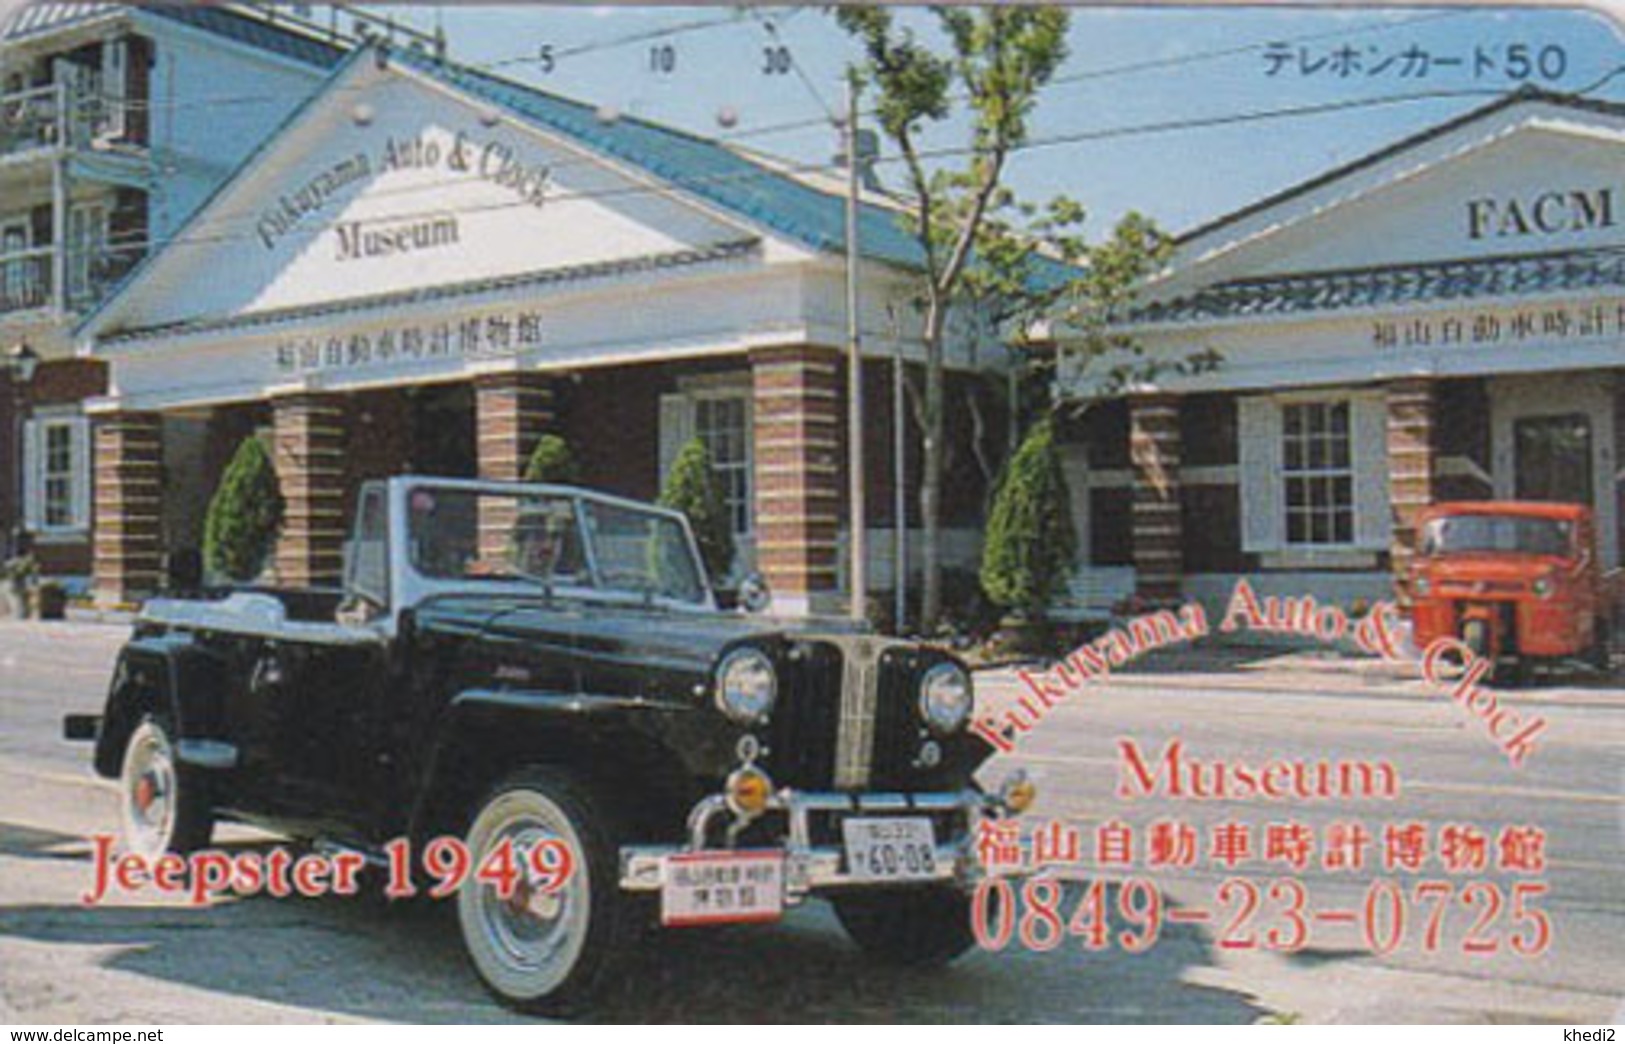 Télécarte Japon / 350-0745 - MUSEE - VOITURE JEEPSTER 1949 - AUTO & CLOCK MUSEUM - OLDTIMER CAR Japan Phonecard -  75 - Voitures